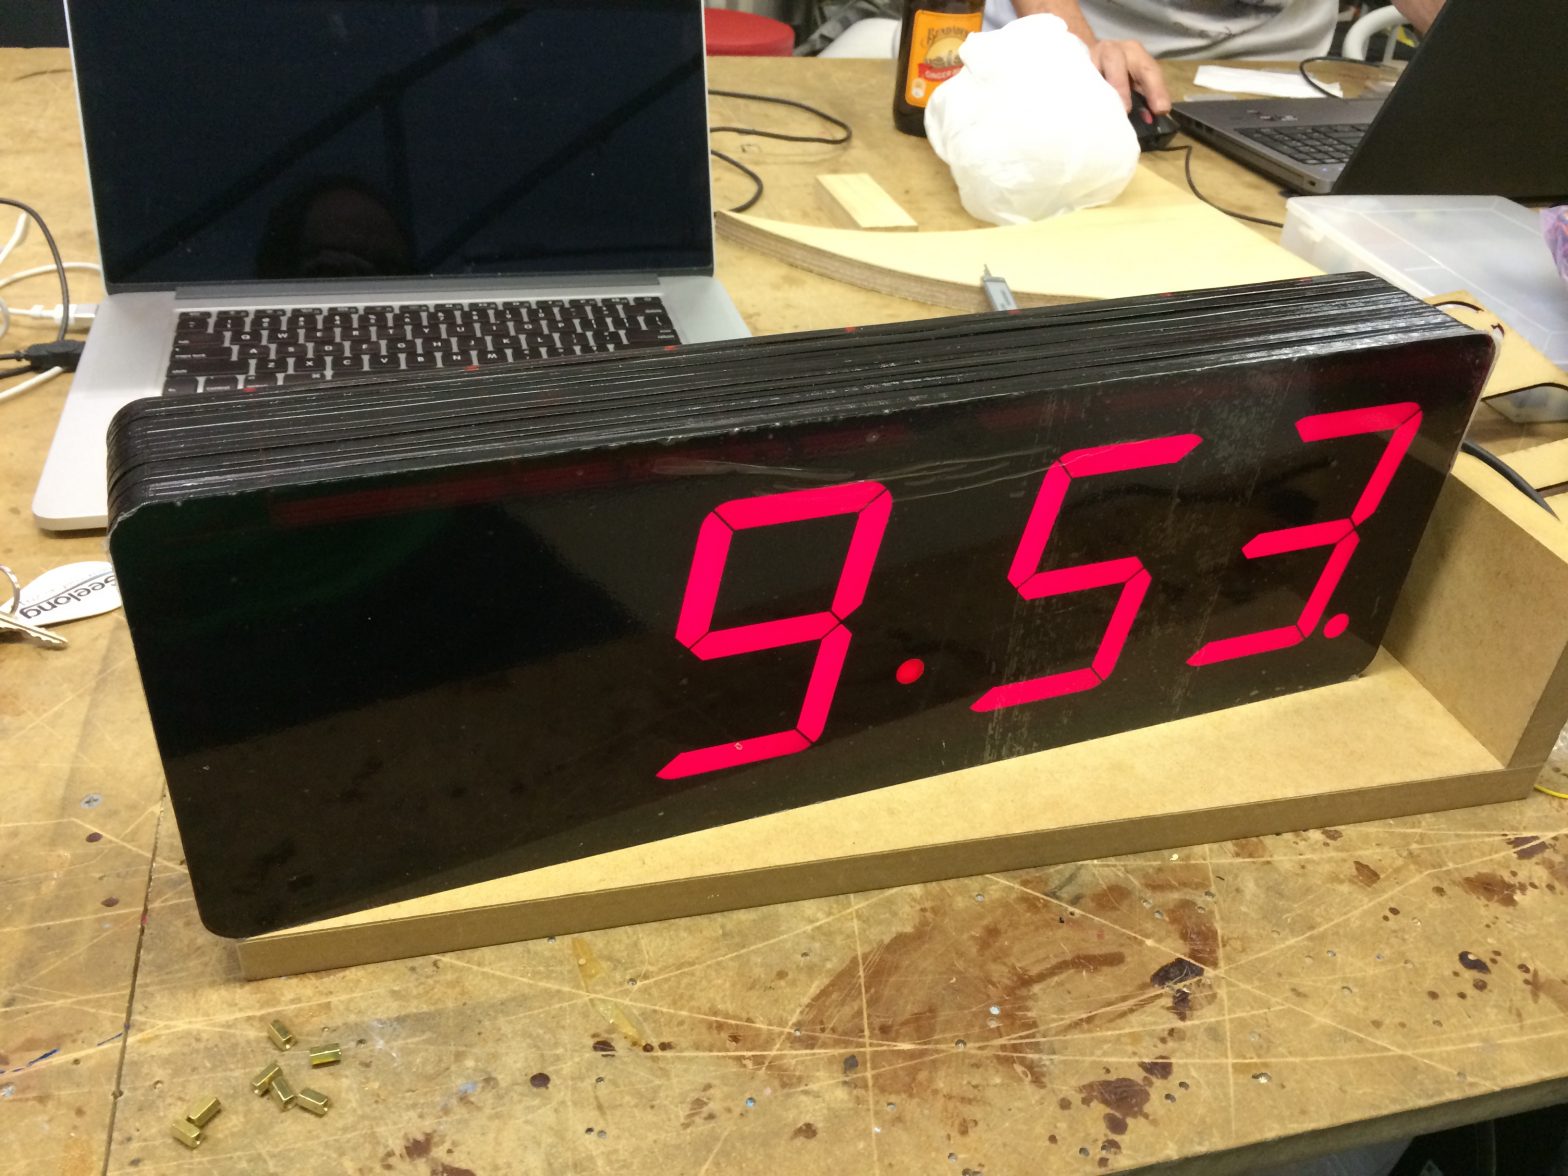 large 7 segment display clock showing 9:53 time